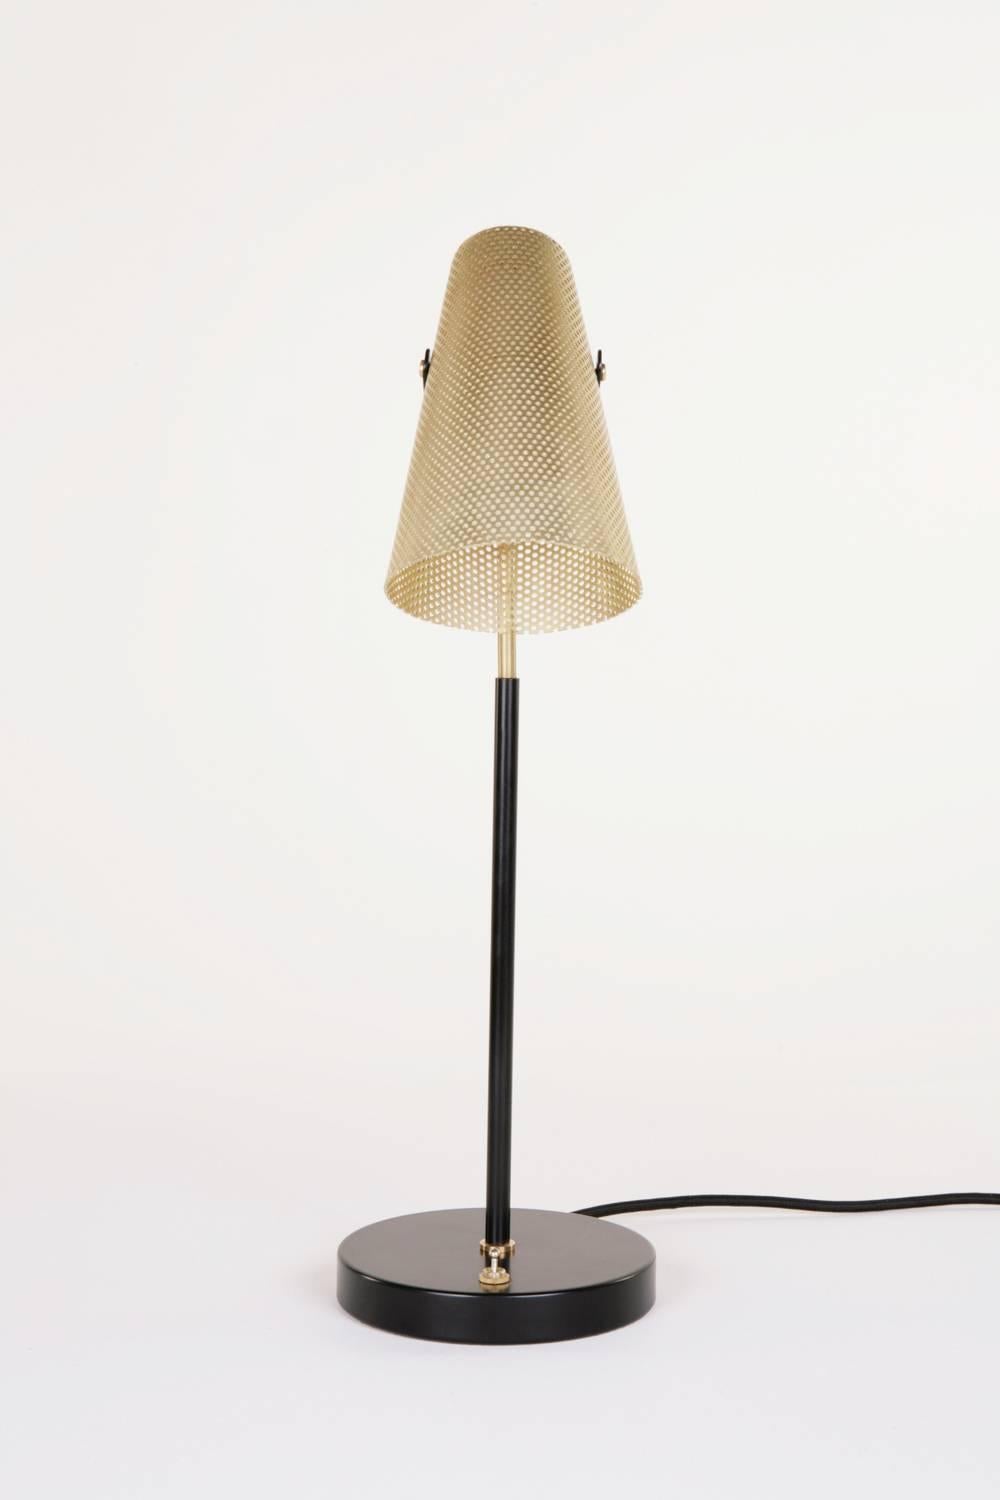 Inspiriert von der Schlichtheit der Sporen eines Pferdes, trägt die Lampe Eperon einen perforierten Messingschirm auf einem Messingstiel mit einem schwarz pulverbeschichteten Sockel. Diese einzigartige Schreibtischlampe bietet ein gerichtetes Licht,